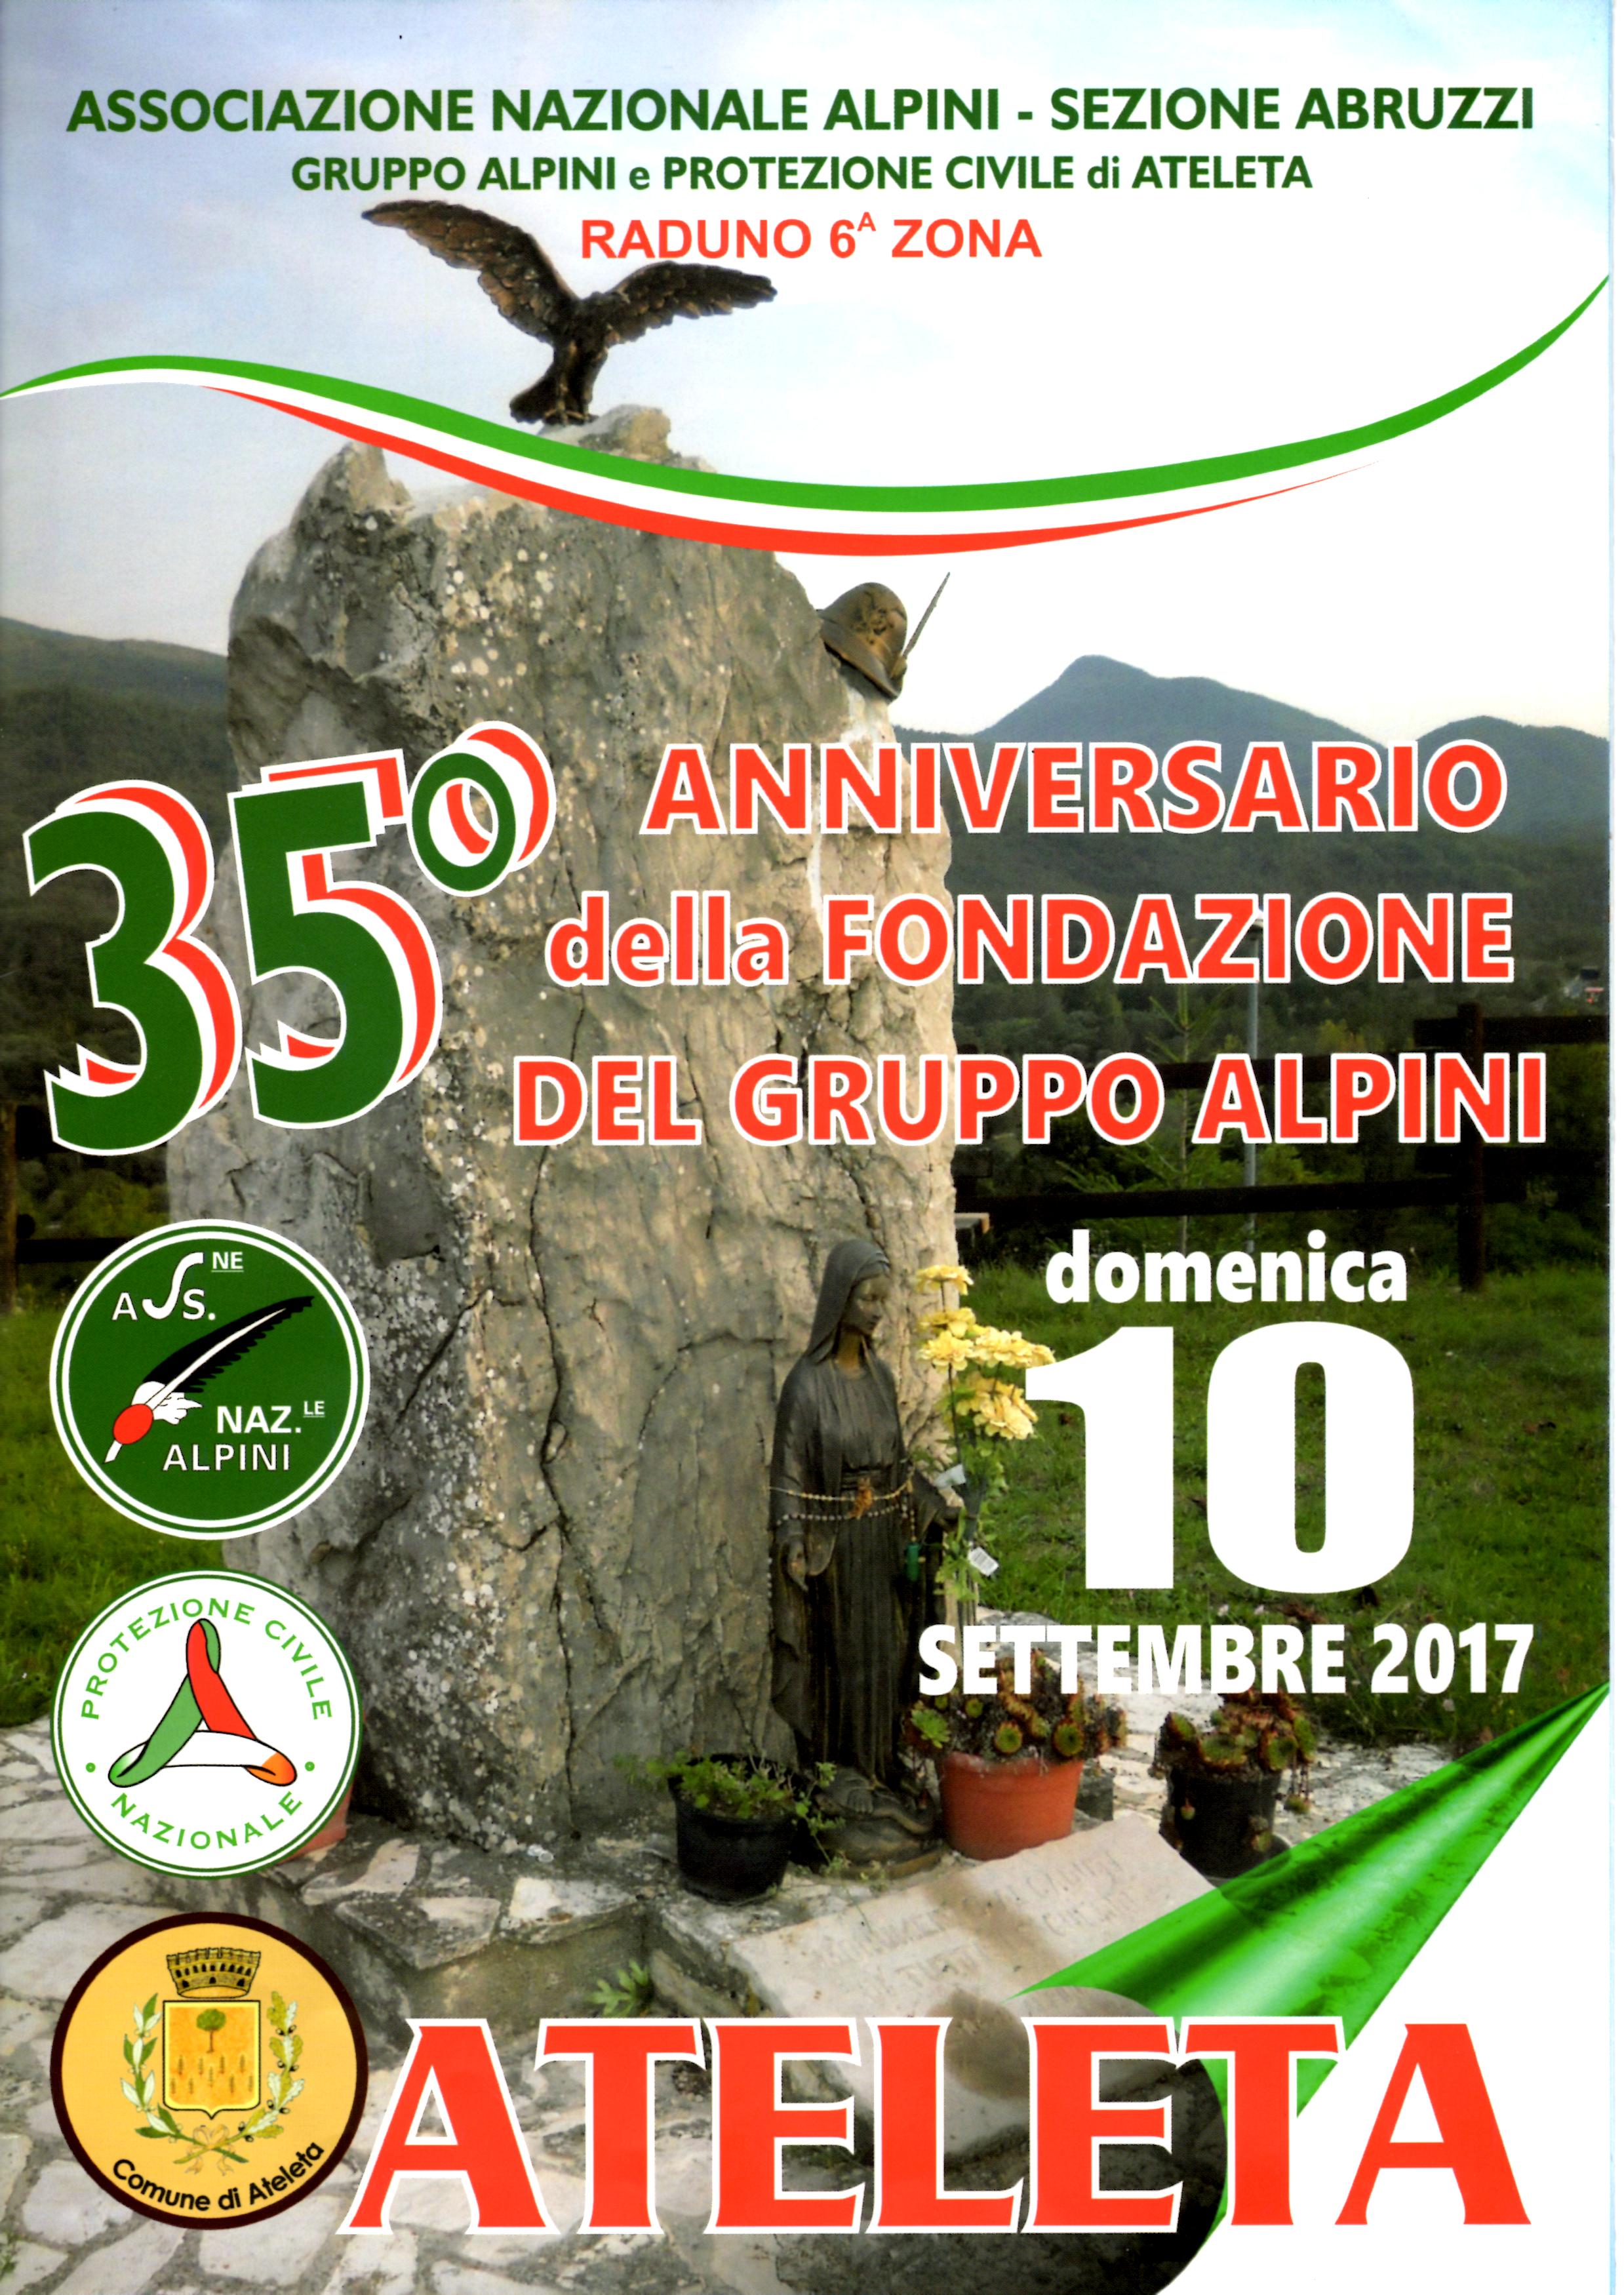 Ateleta 35° Anniversario della Fondazione del Gruppo Alpini